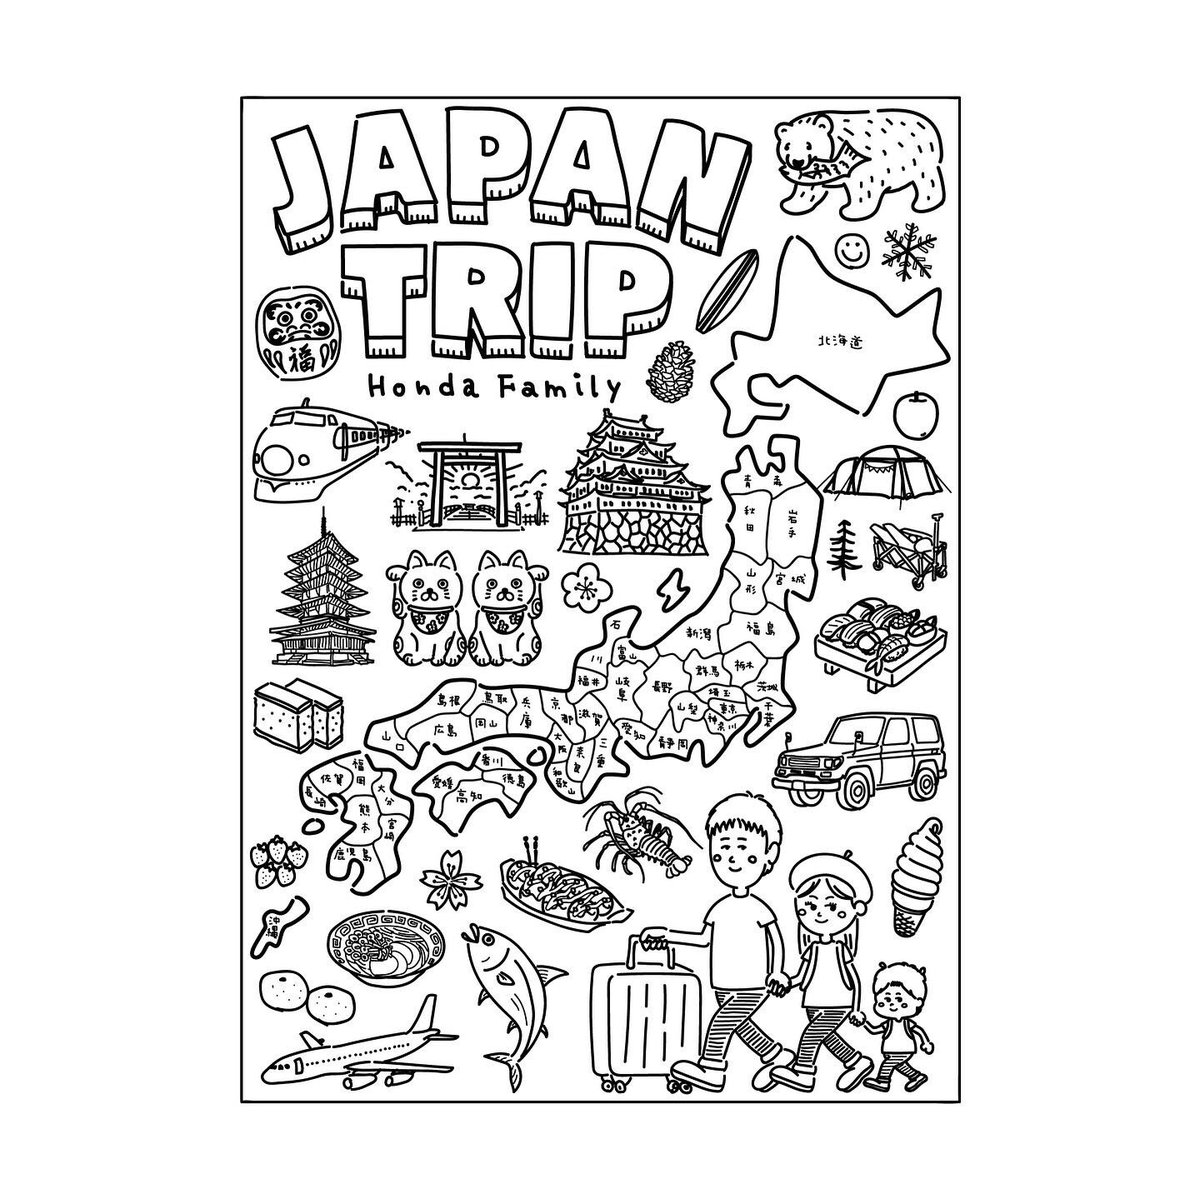 すだしゅんいちろう Sampo Studio 先日宣伝しましたjapan Tripという日本地図 ポスターのご依頼をいただきました ありがとうございます フレームに入れてかわいい娘さんと一緒にに写っている写真を見て幸せな気分になりました 興味のある方はご連絡下さい